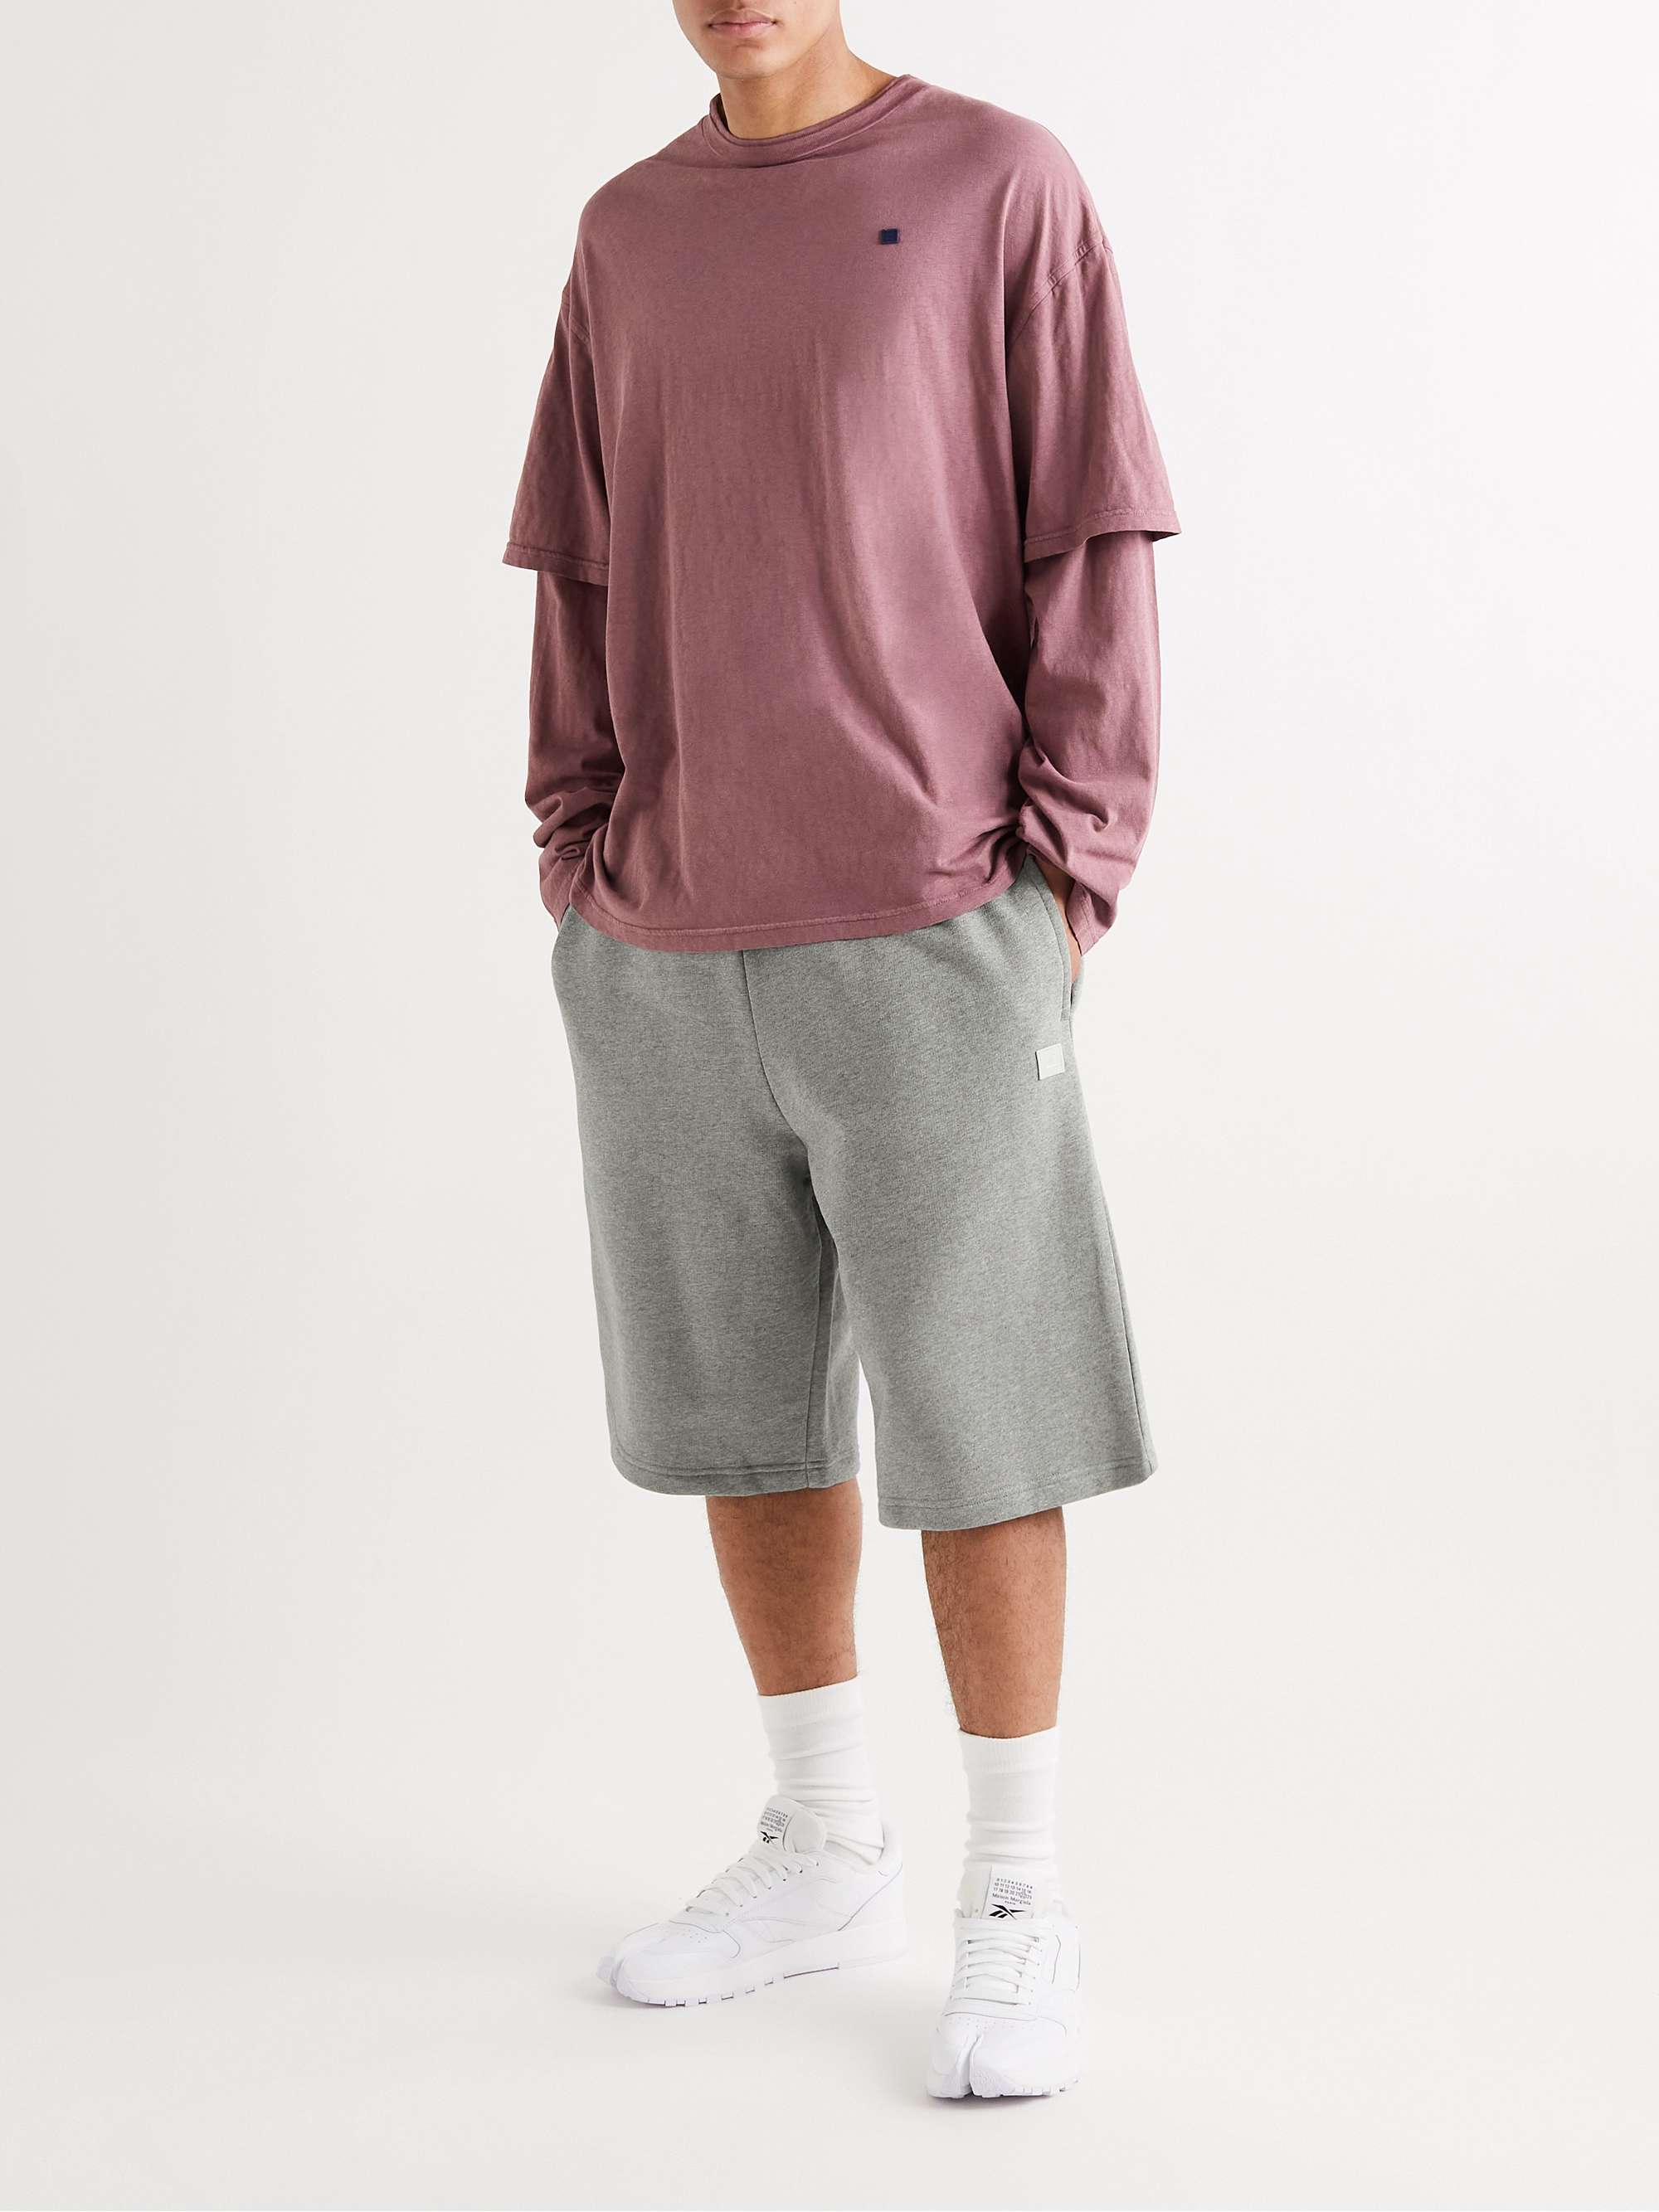 distrikt Til fods stå ACNE STUDIOS Logo-Appliquéd Cotton-Jersey Shorts for Men | MR PORTER